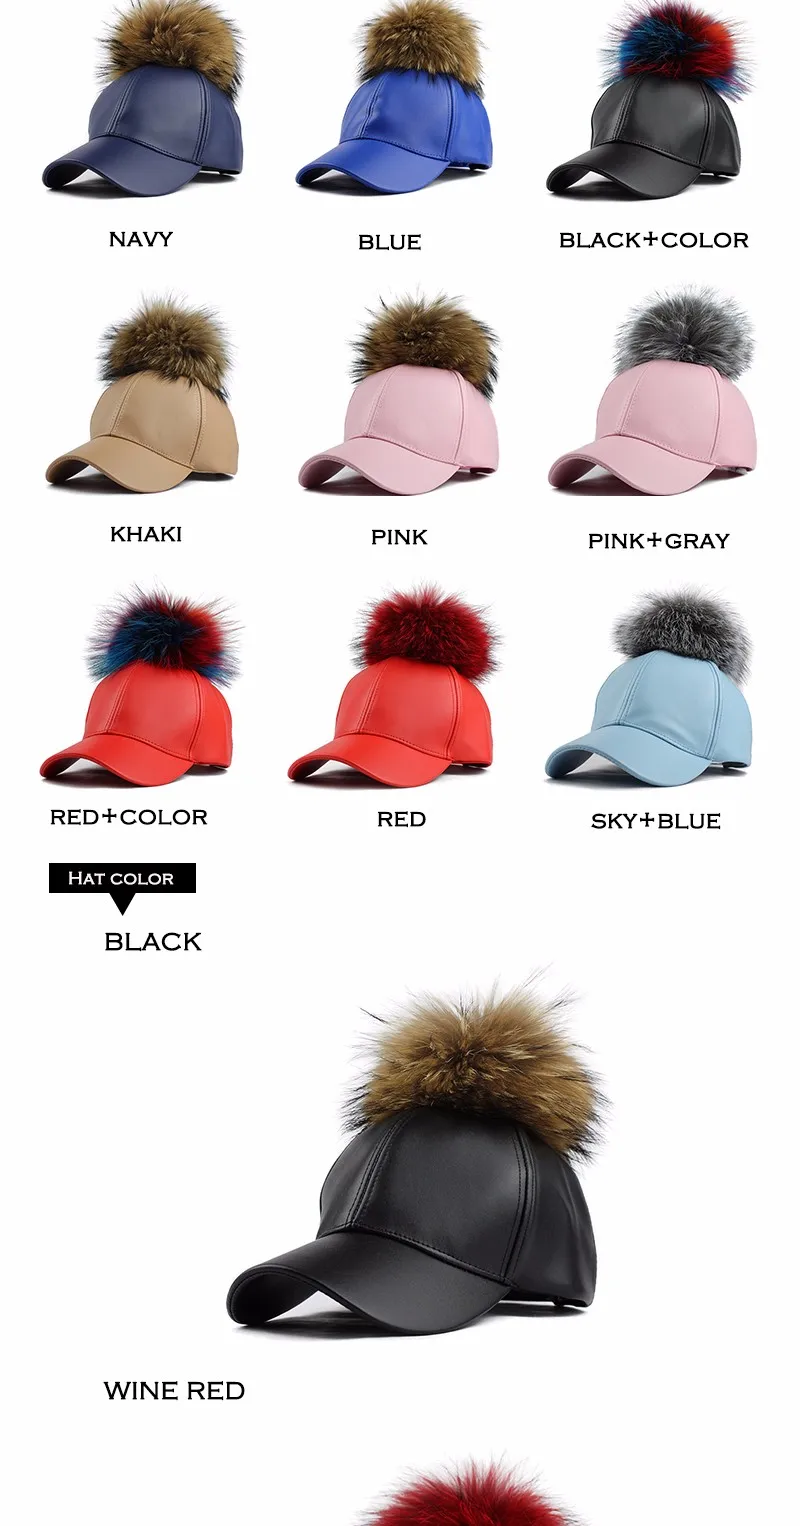 FETSBUY/бейсбольная Кепка из искусственной кожи с помпонами из натуральной норки, Меховая кепка в стиле хип-хоп, Кепка с помпонами, зимние шапки для женщин